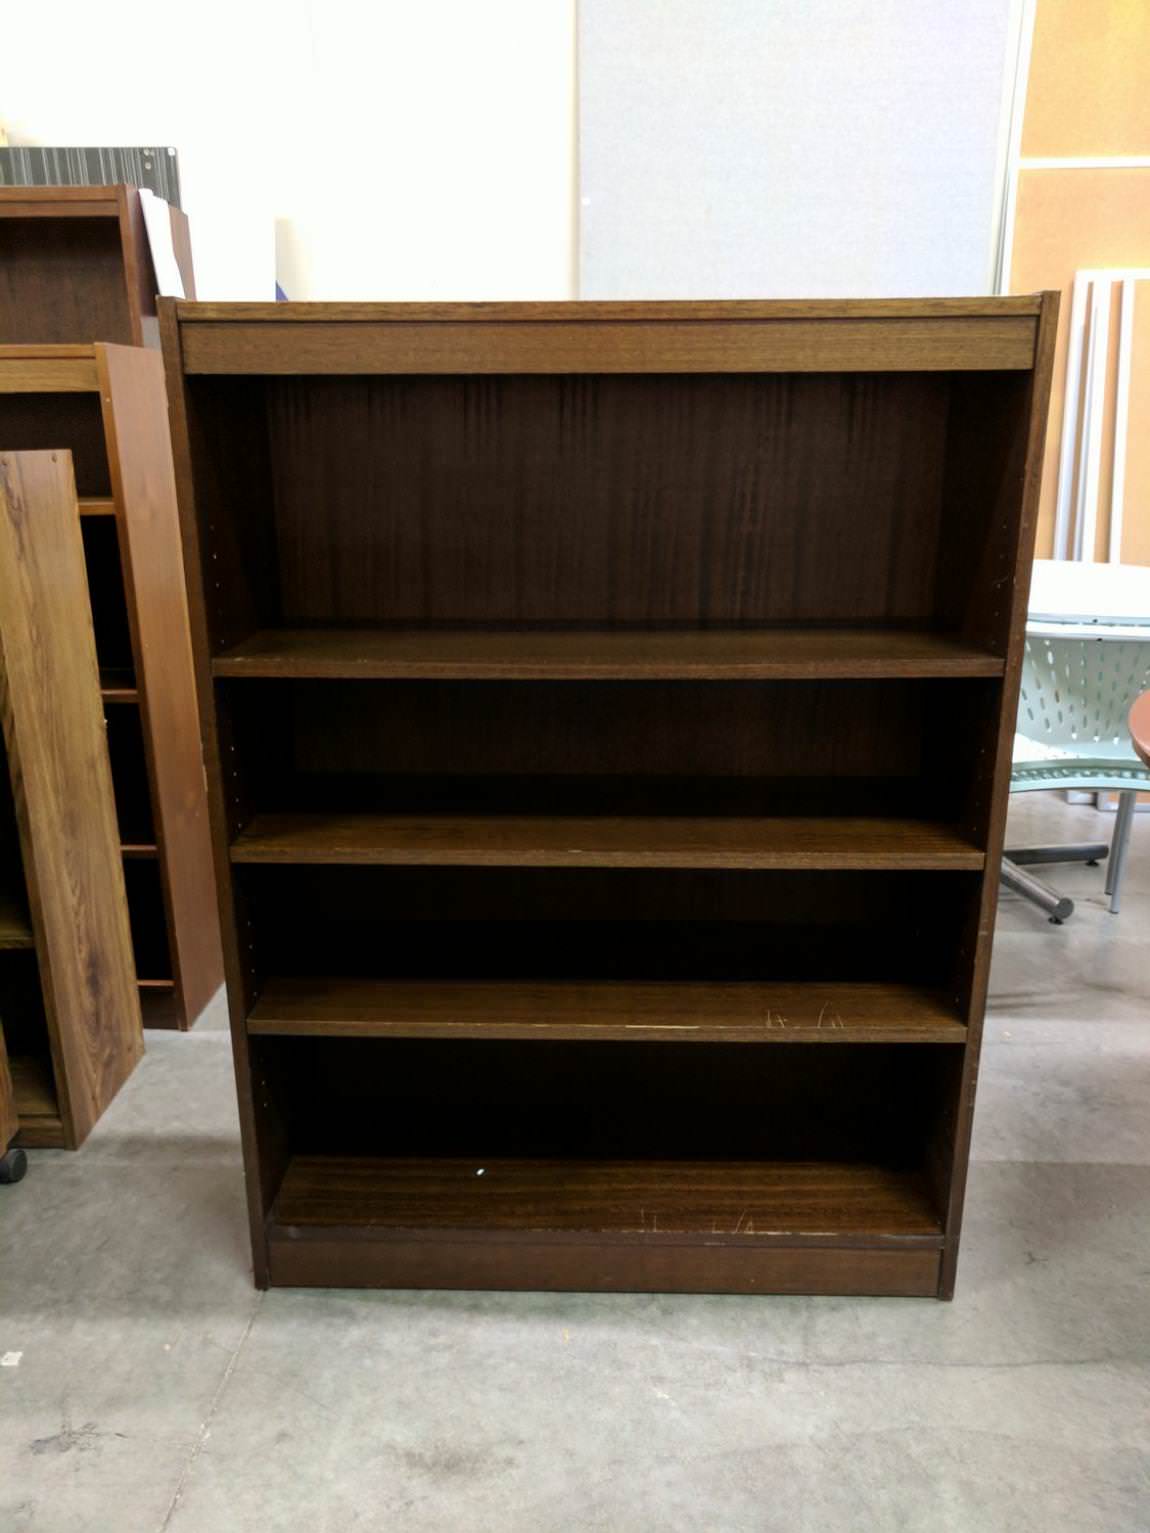 Wood Bookshelf with Dark Walnut Finish – 36 Inch Wide